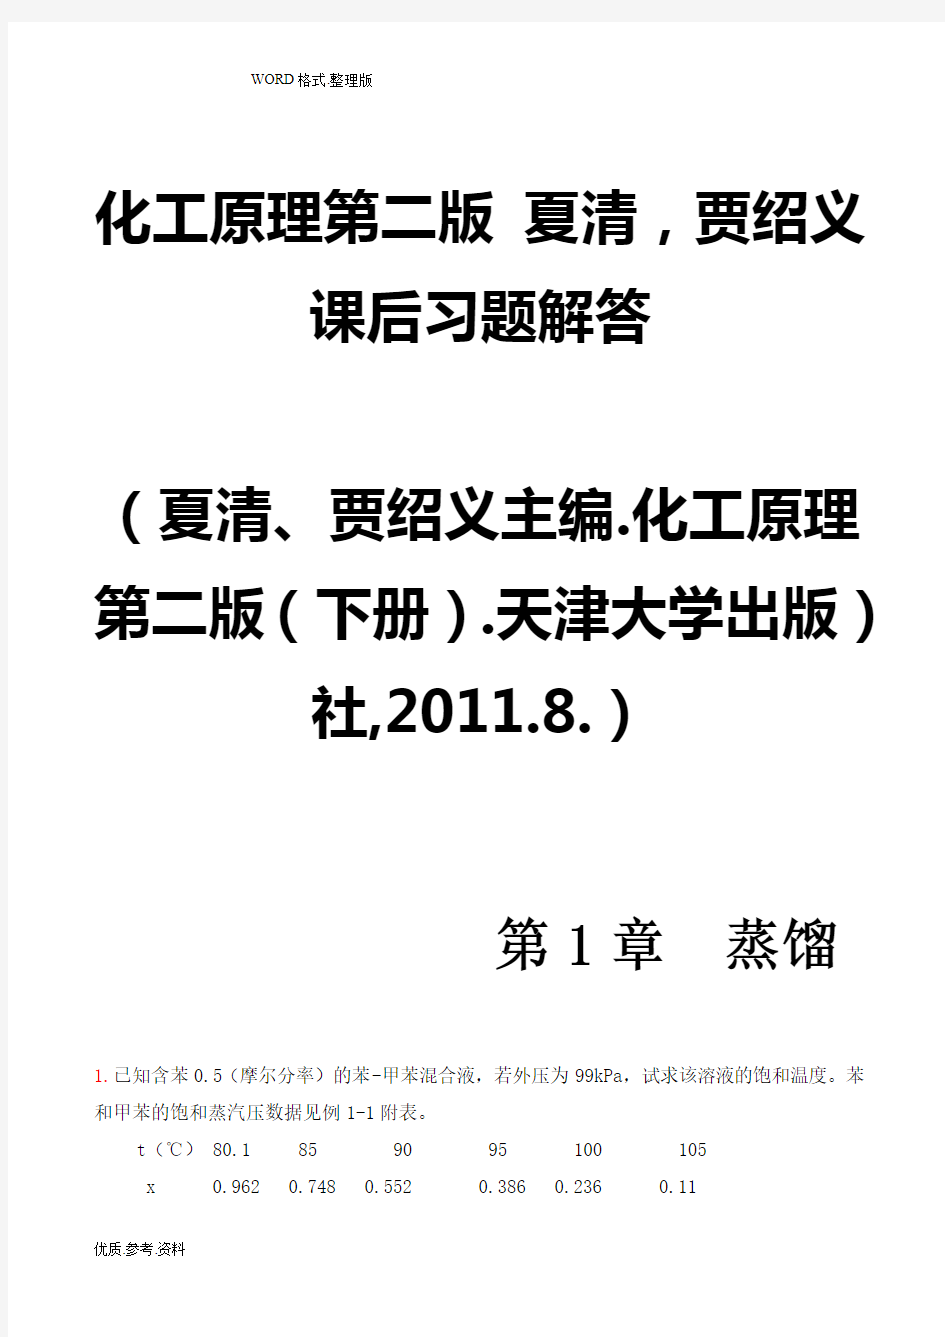 化工原理第二版((下册))夏清贾绍义课后习题解答带图